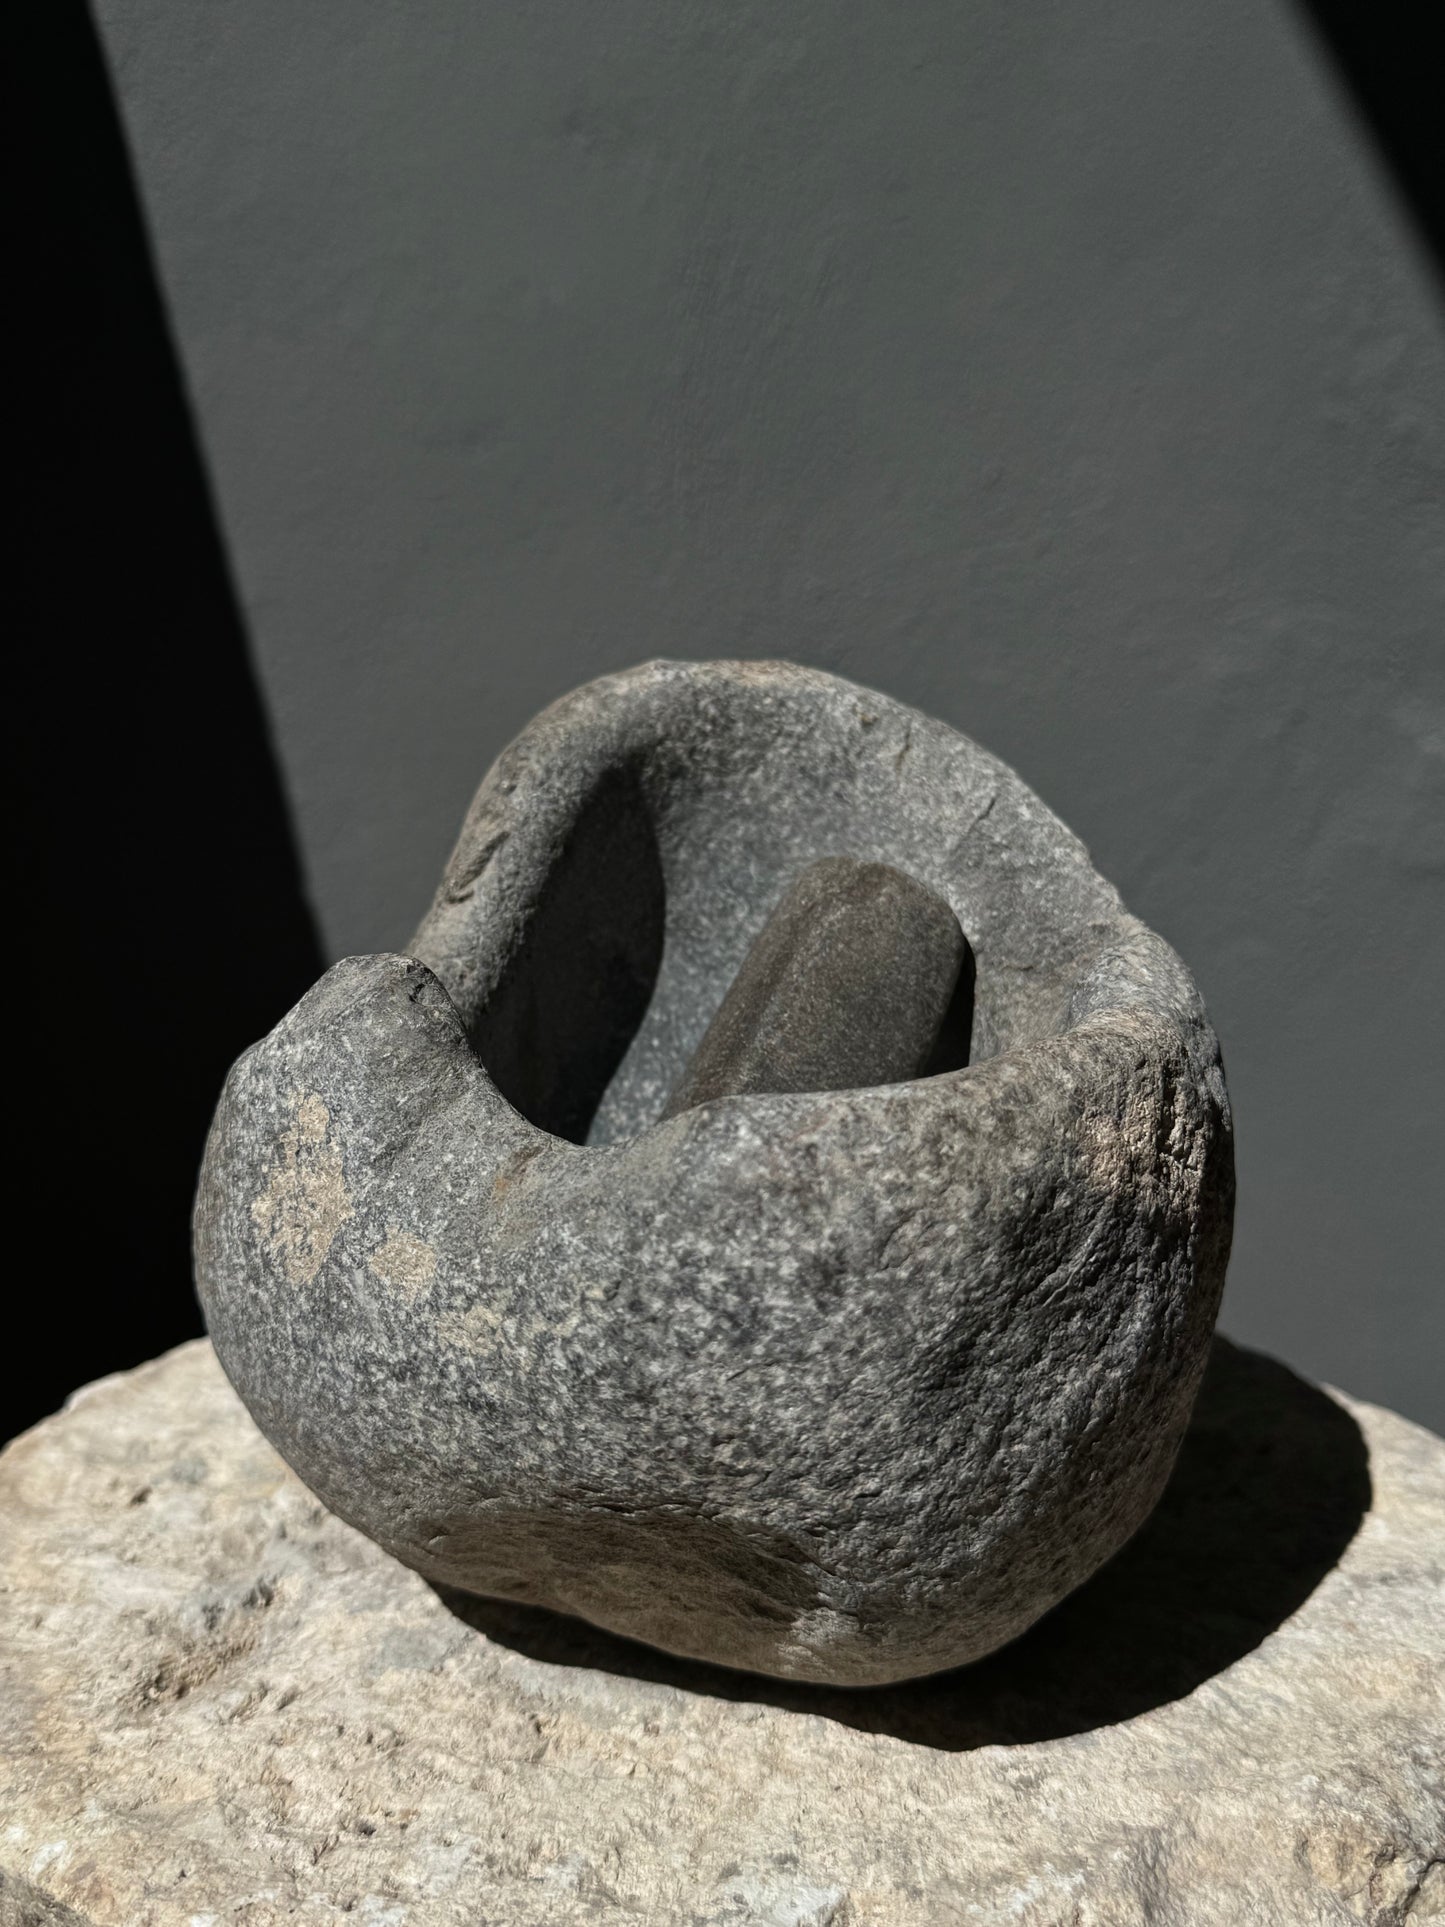 Primitive River Stone Mortar With Pestle From San Luis Potosí, Mexico | Mortero Primitivo De Piedra, SLP